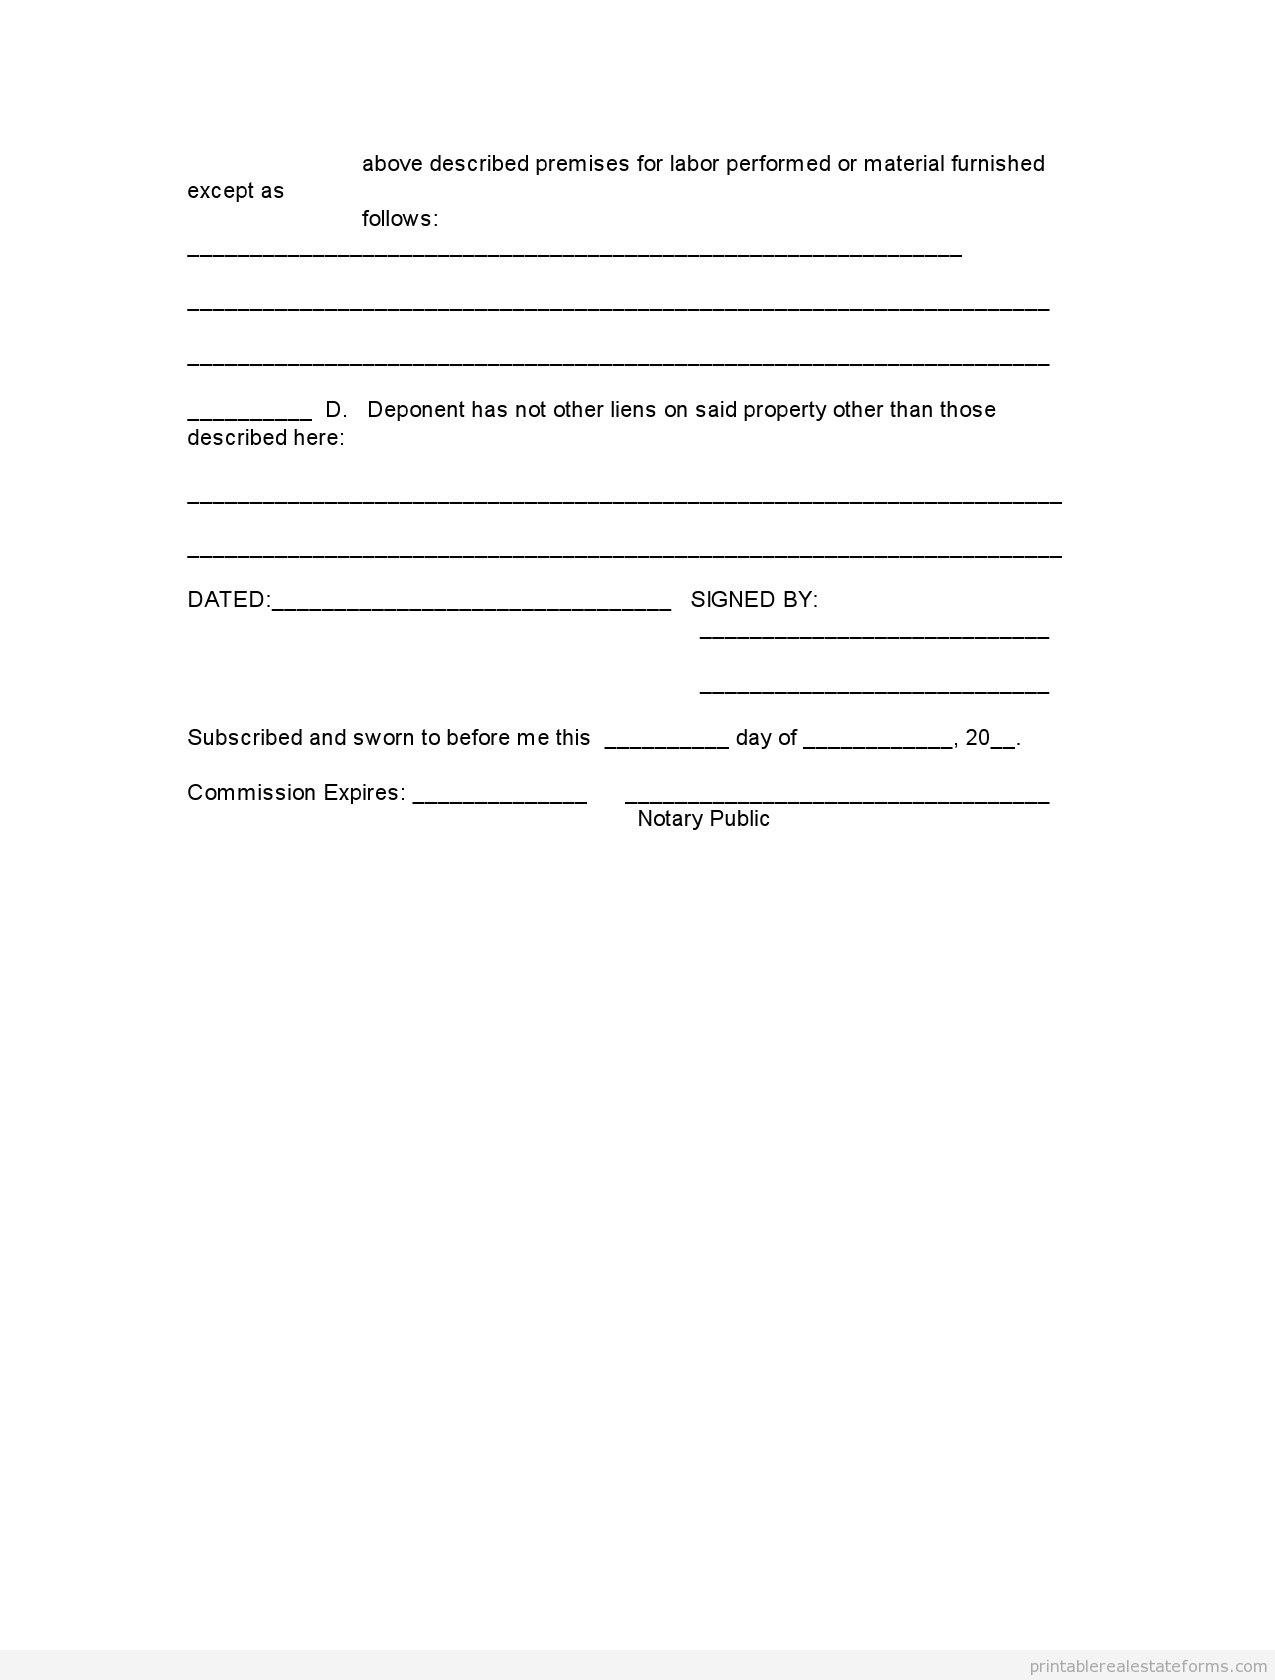 Printable AFFIDAVIT OF Ownership Wholesaling Form PDF